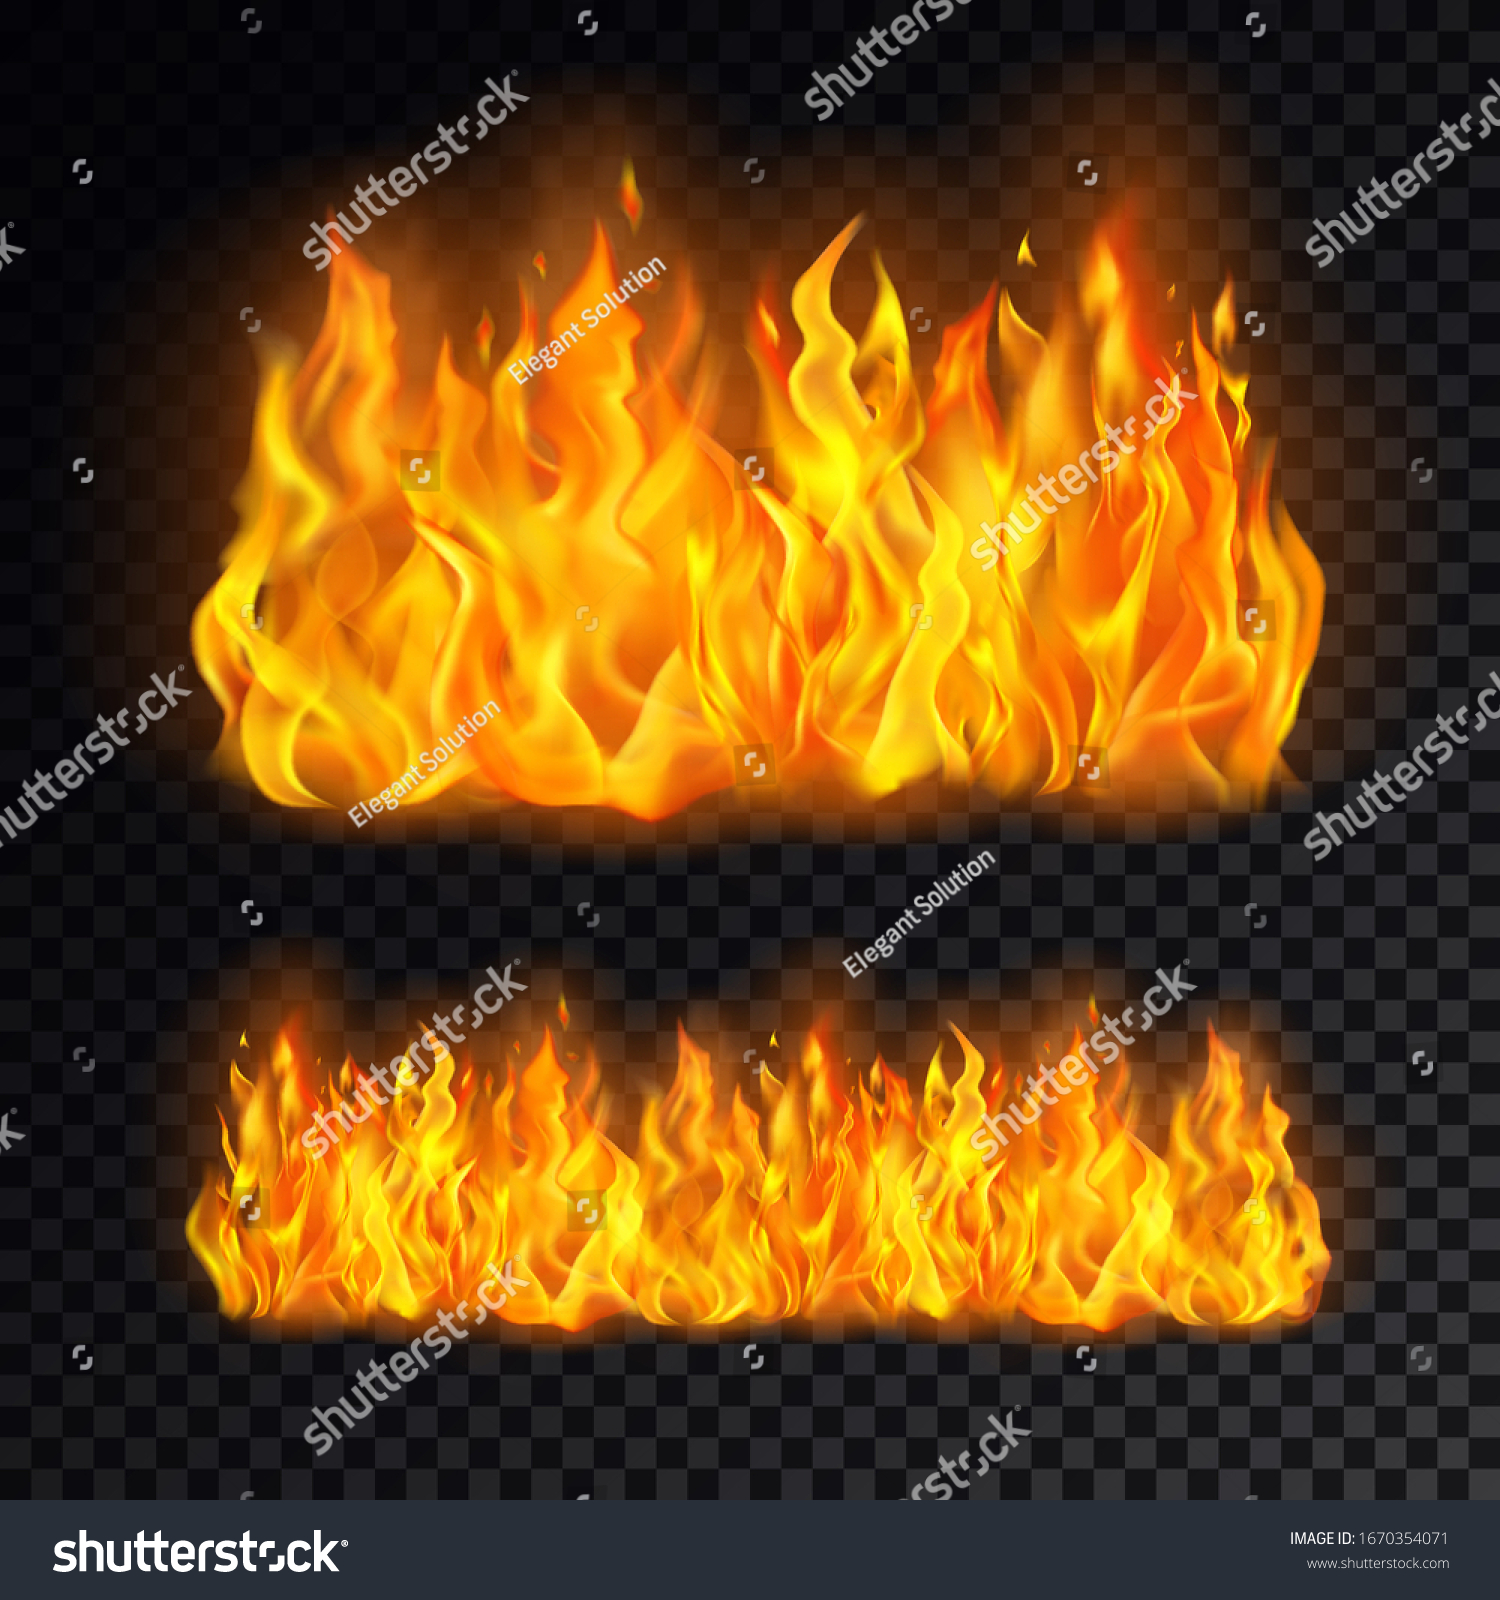 透明な背景にリアルな漫画の火 キャンプファイア 炎と燃焼のアイコン 熱や燃えやすい絵文字用のベクターイラスト 火の玉 危険と危険のテーマ のベクター画像素材 ロイヤリティフリー